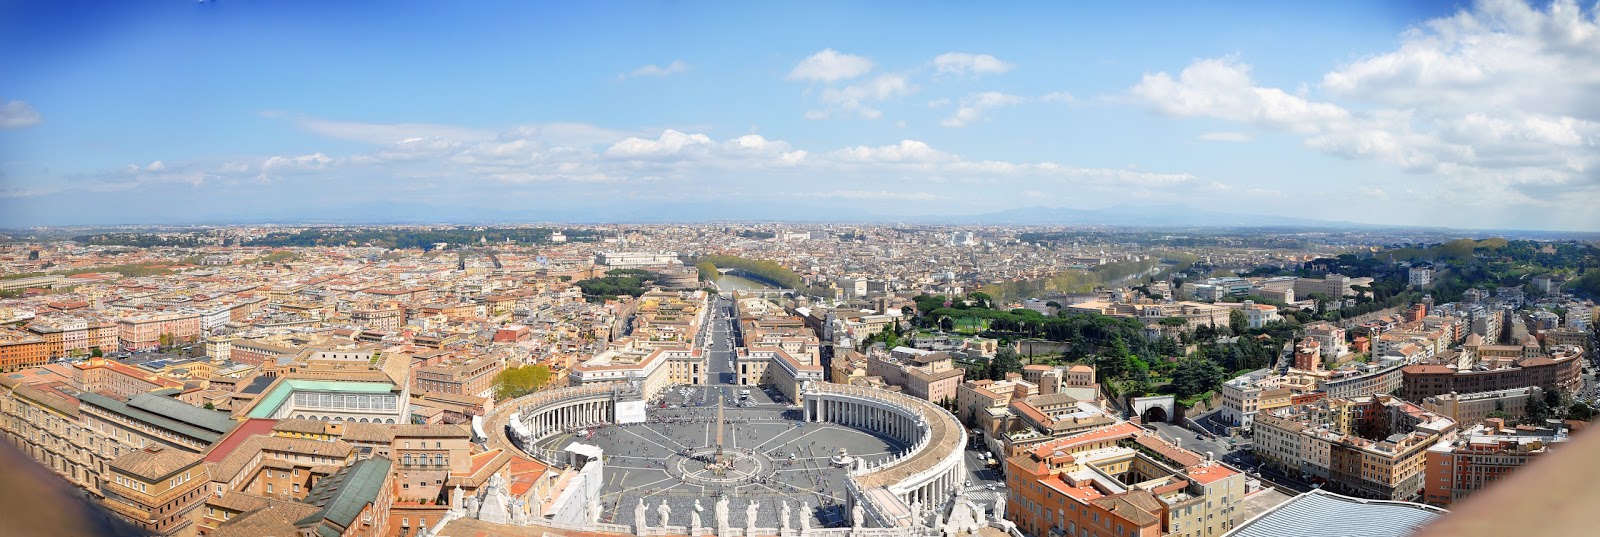 Панорама Рима с купола собора Святого Петра